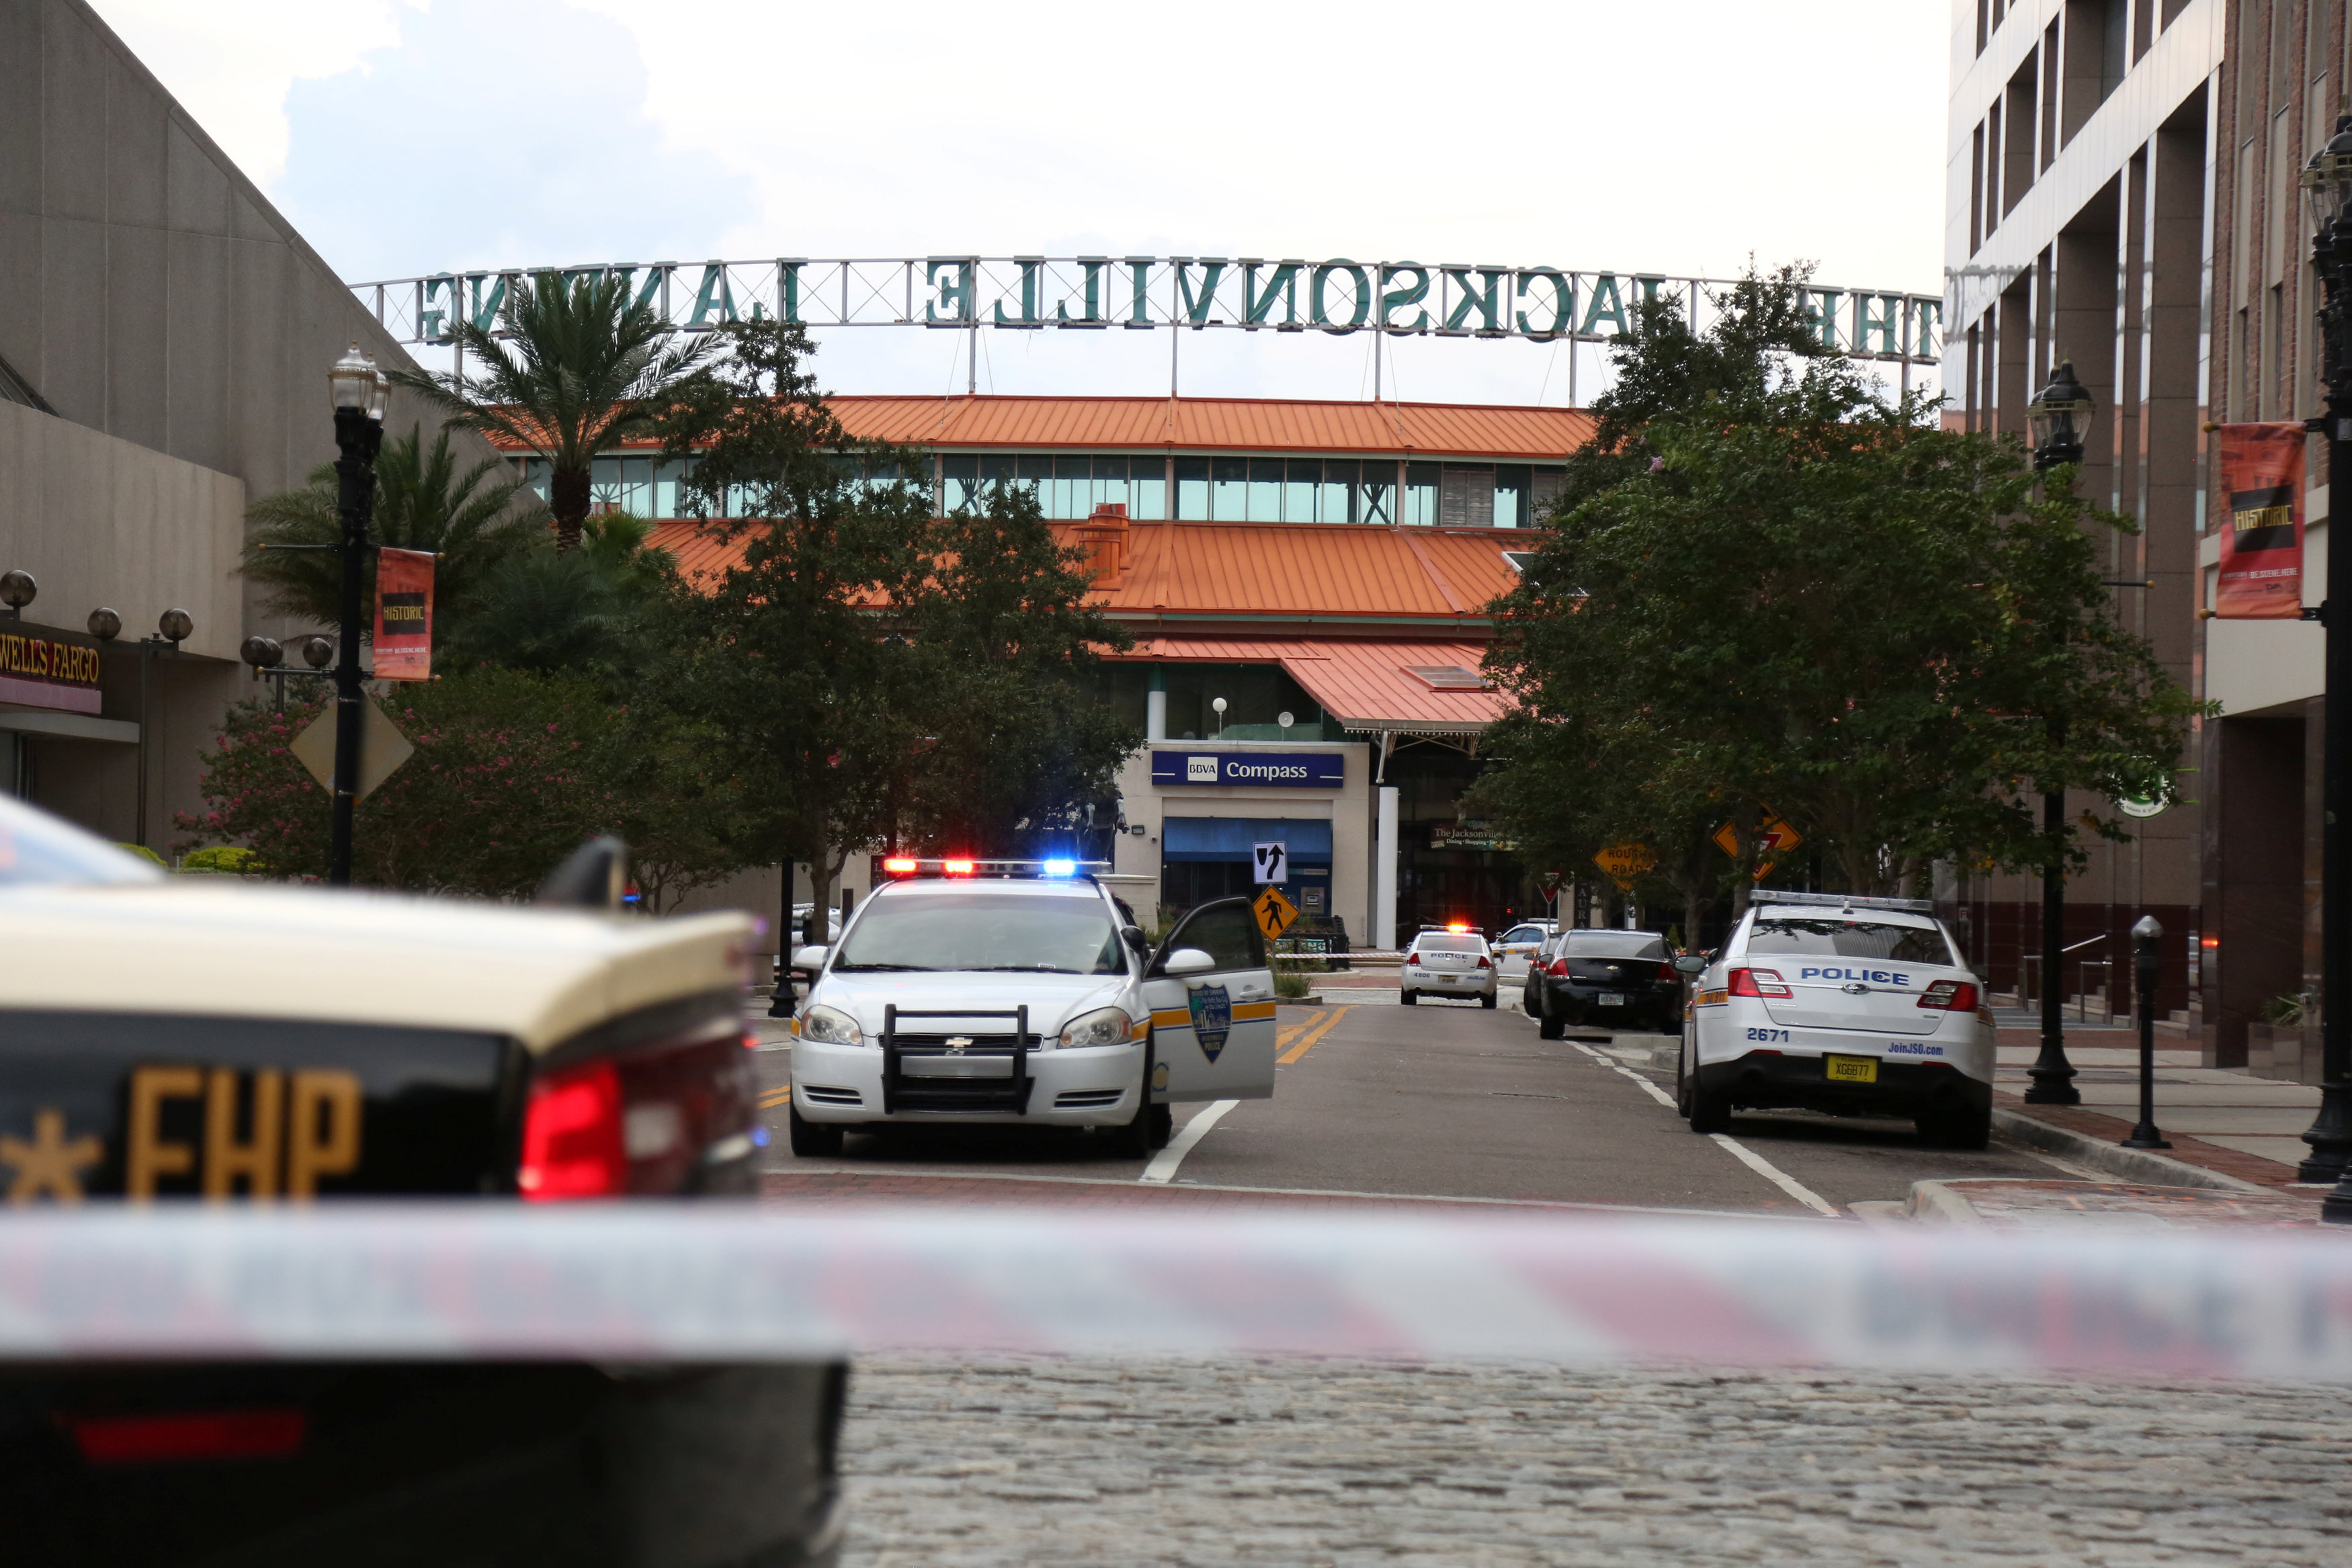 Φλόριντα-Τζάκσονβιλ: 3 νεκροί και 11 τραυματίες από την επίθεση σε τουρνουά video-games